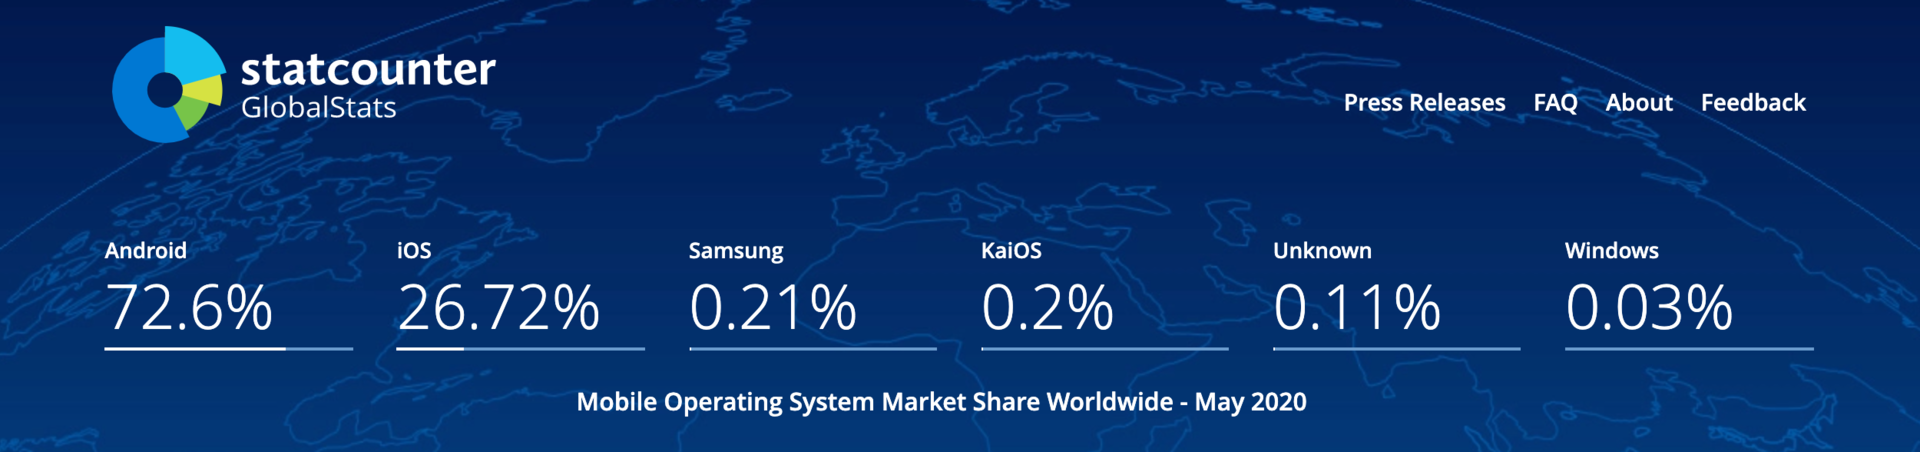 KaiOS CEO：功能机没有被遗忘，仍有280亿美元的市场机会